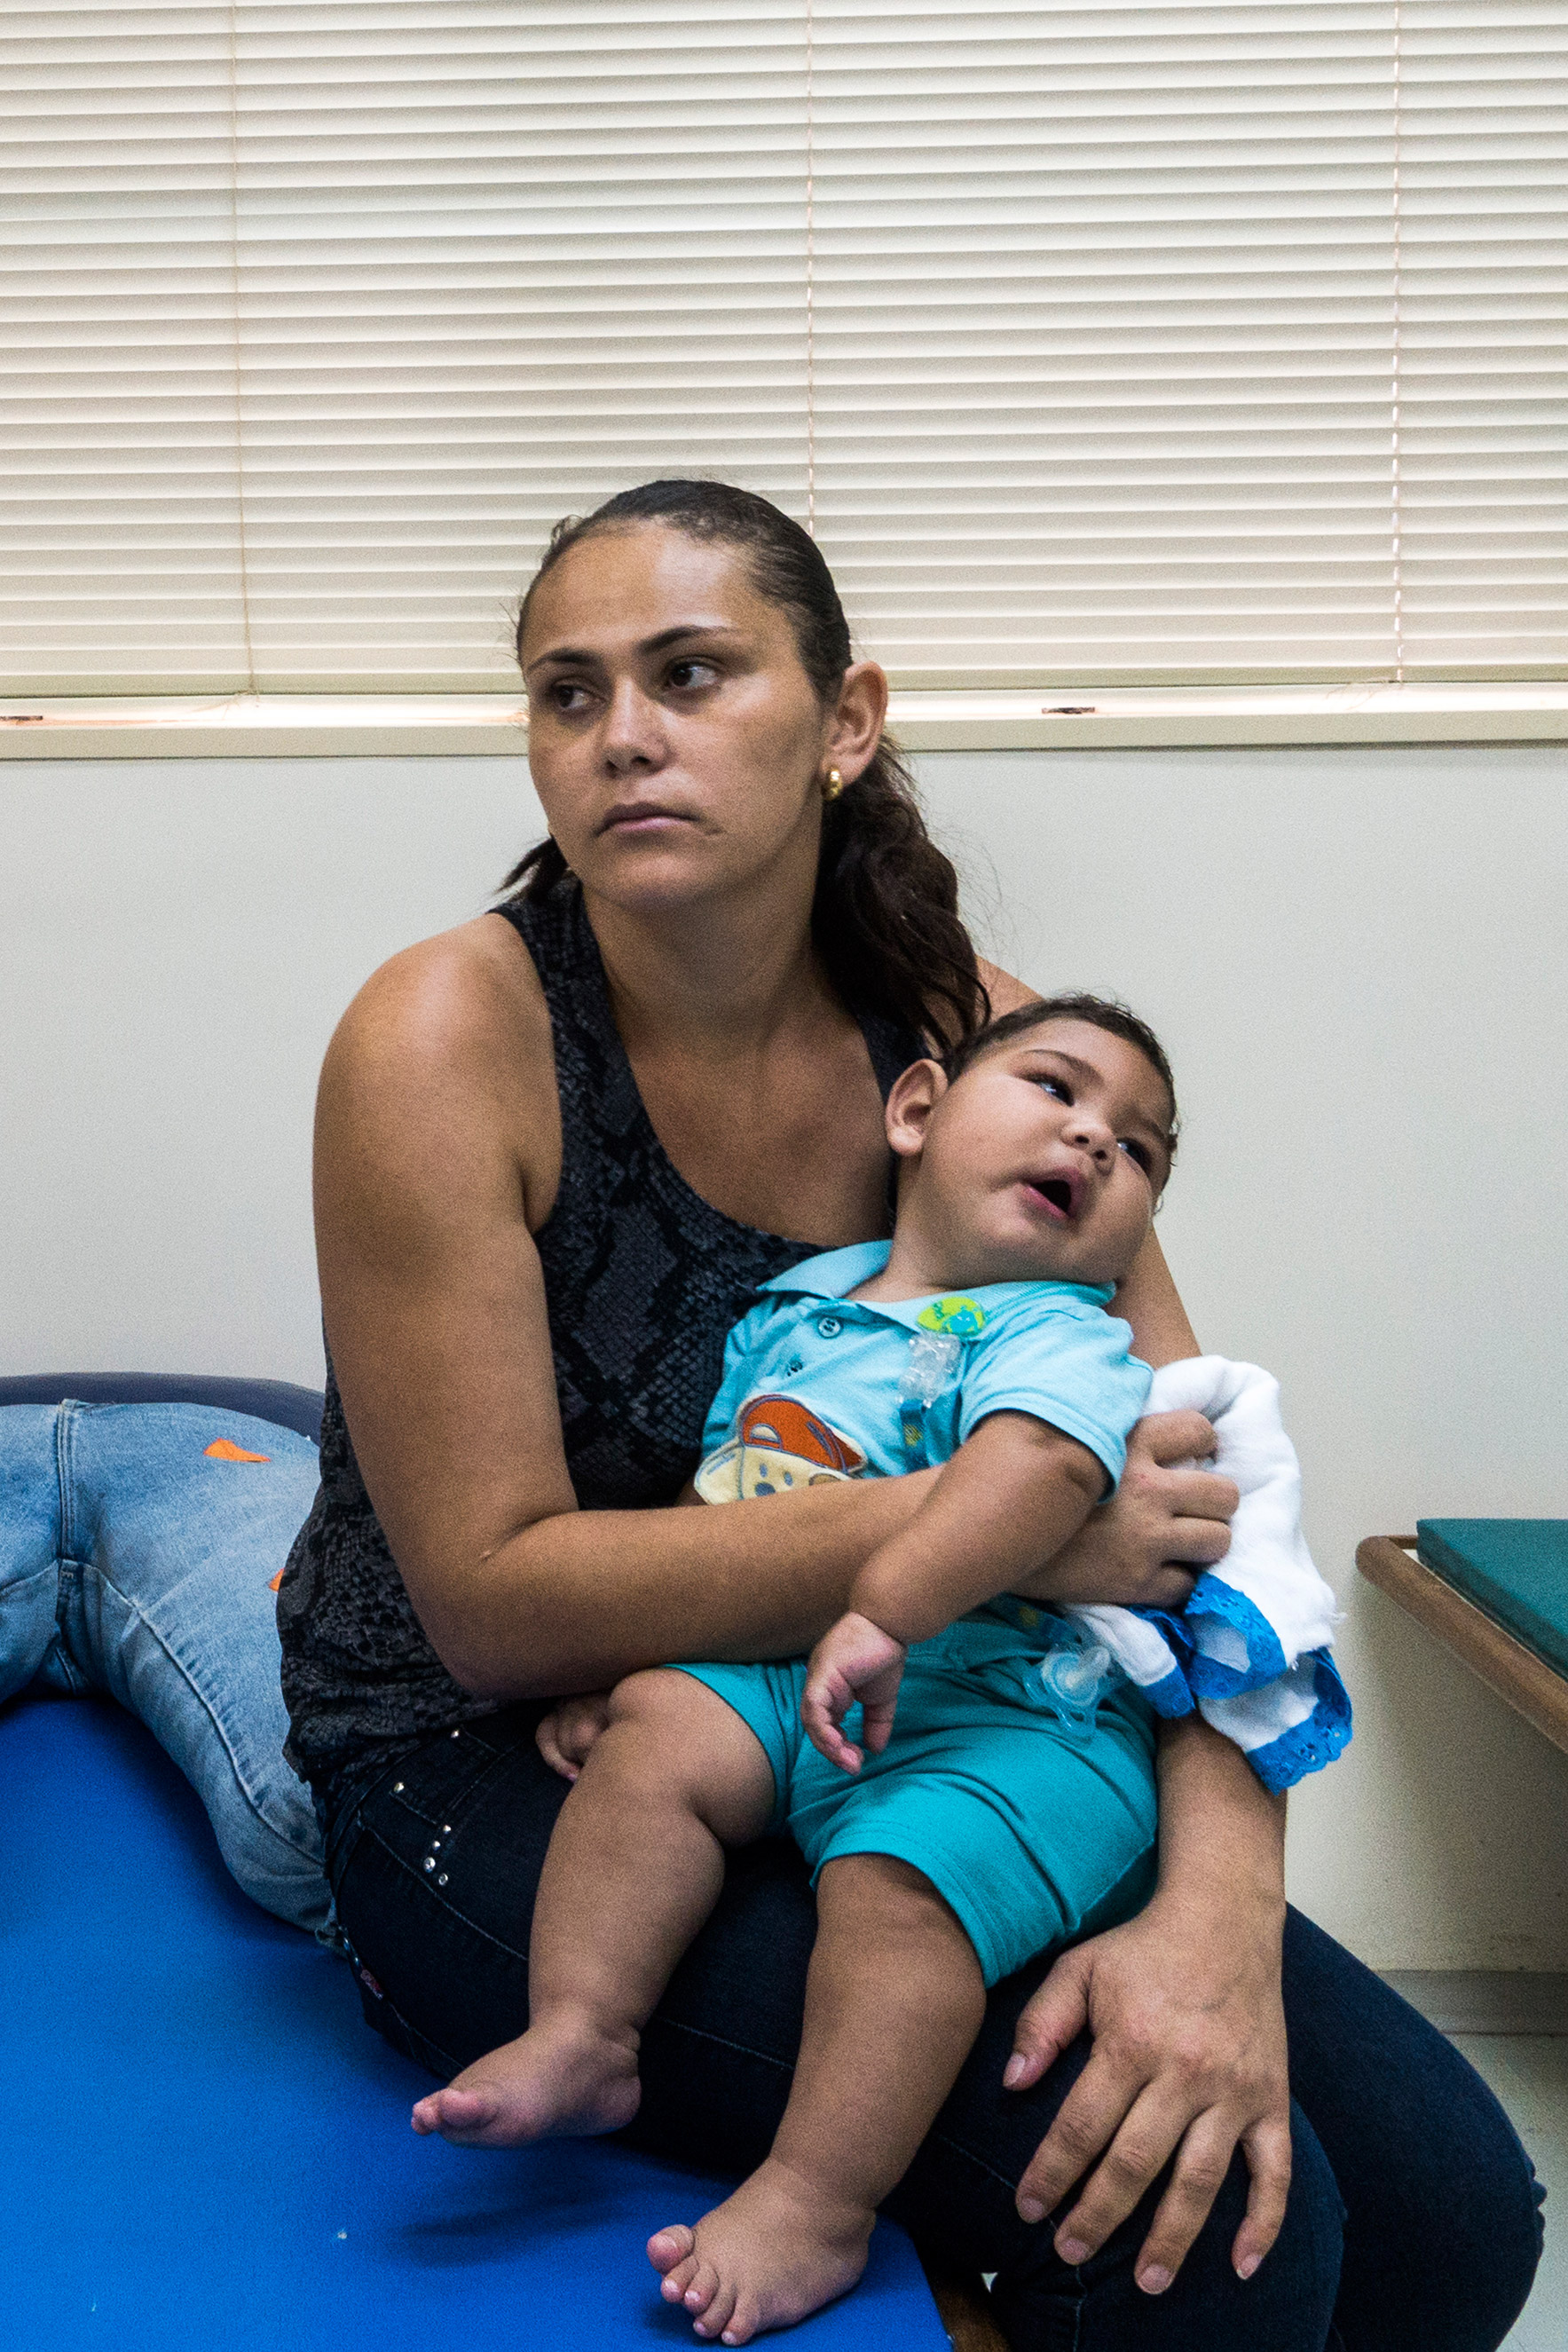 Adriana Cordeiro da Silva, 29, and her seven-month-year-old son Jose Bernardo, who was born with microcephaly, at the Associacao de Assistencia a Crianca Deficiente rehabilitation center in Recife, Brazil.